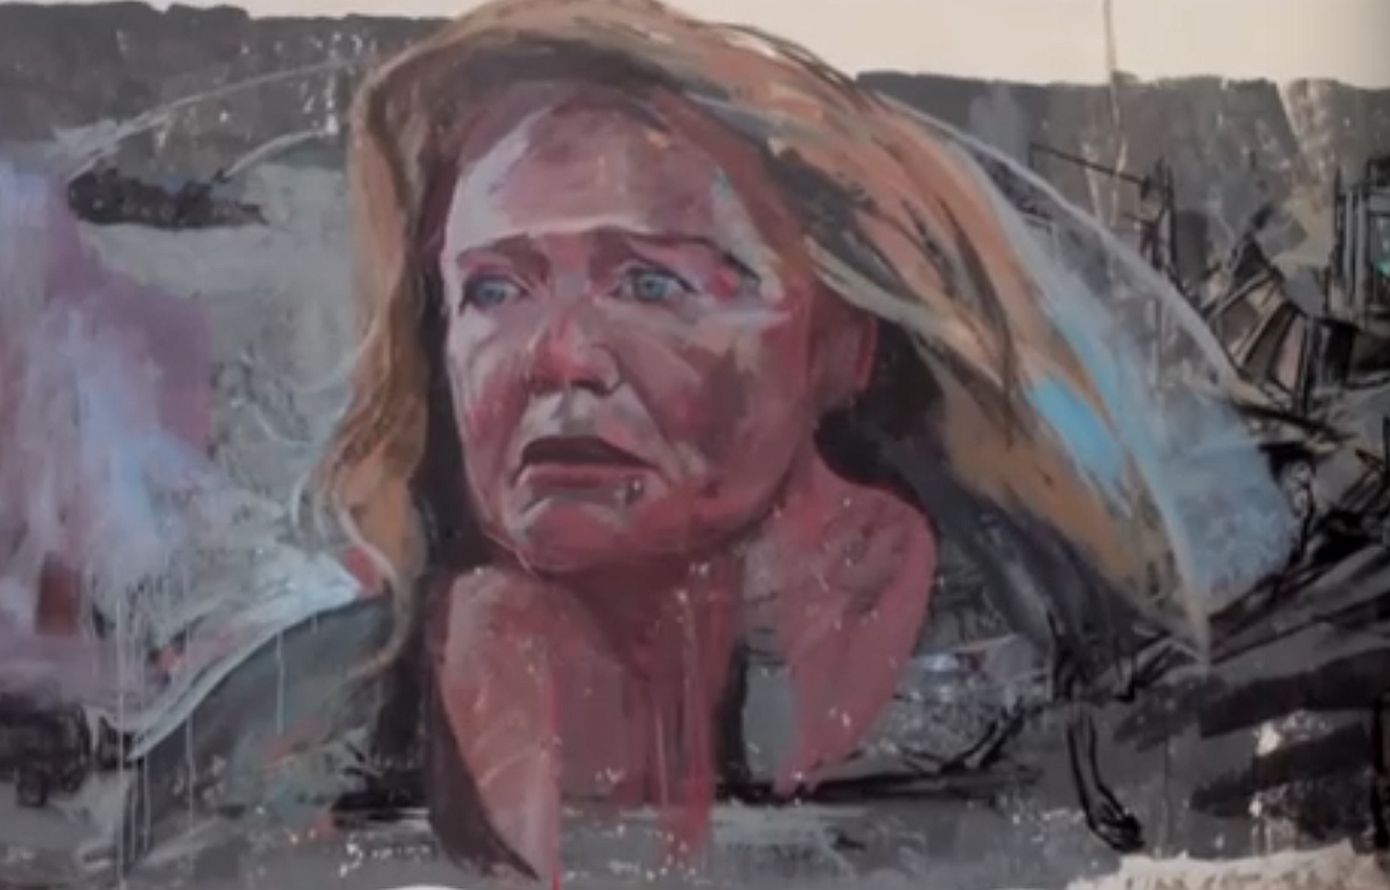 Θεσσαλονίκη: Γκράφιτι με το πρόσωπο της Μαρίας Καβογιάννη στέλνει ηχηρό μήνυμα κατά της έμφυλης βίας